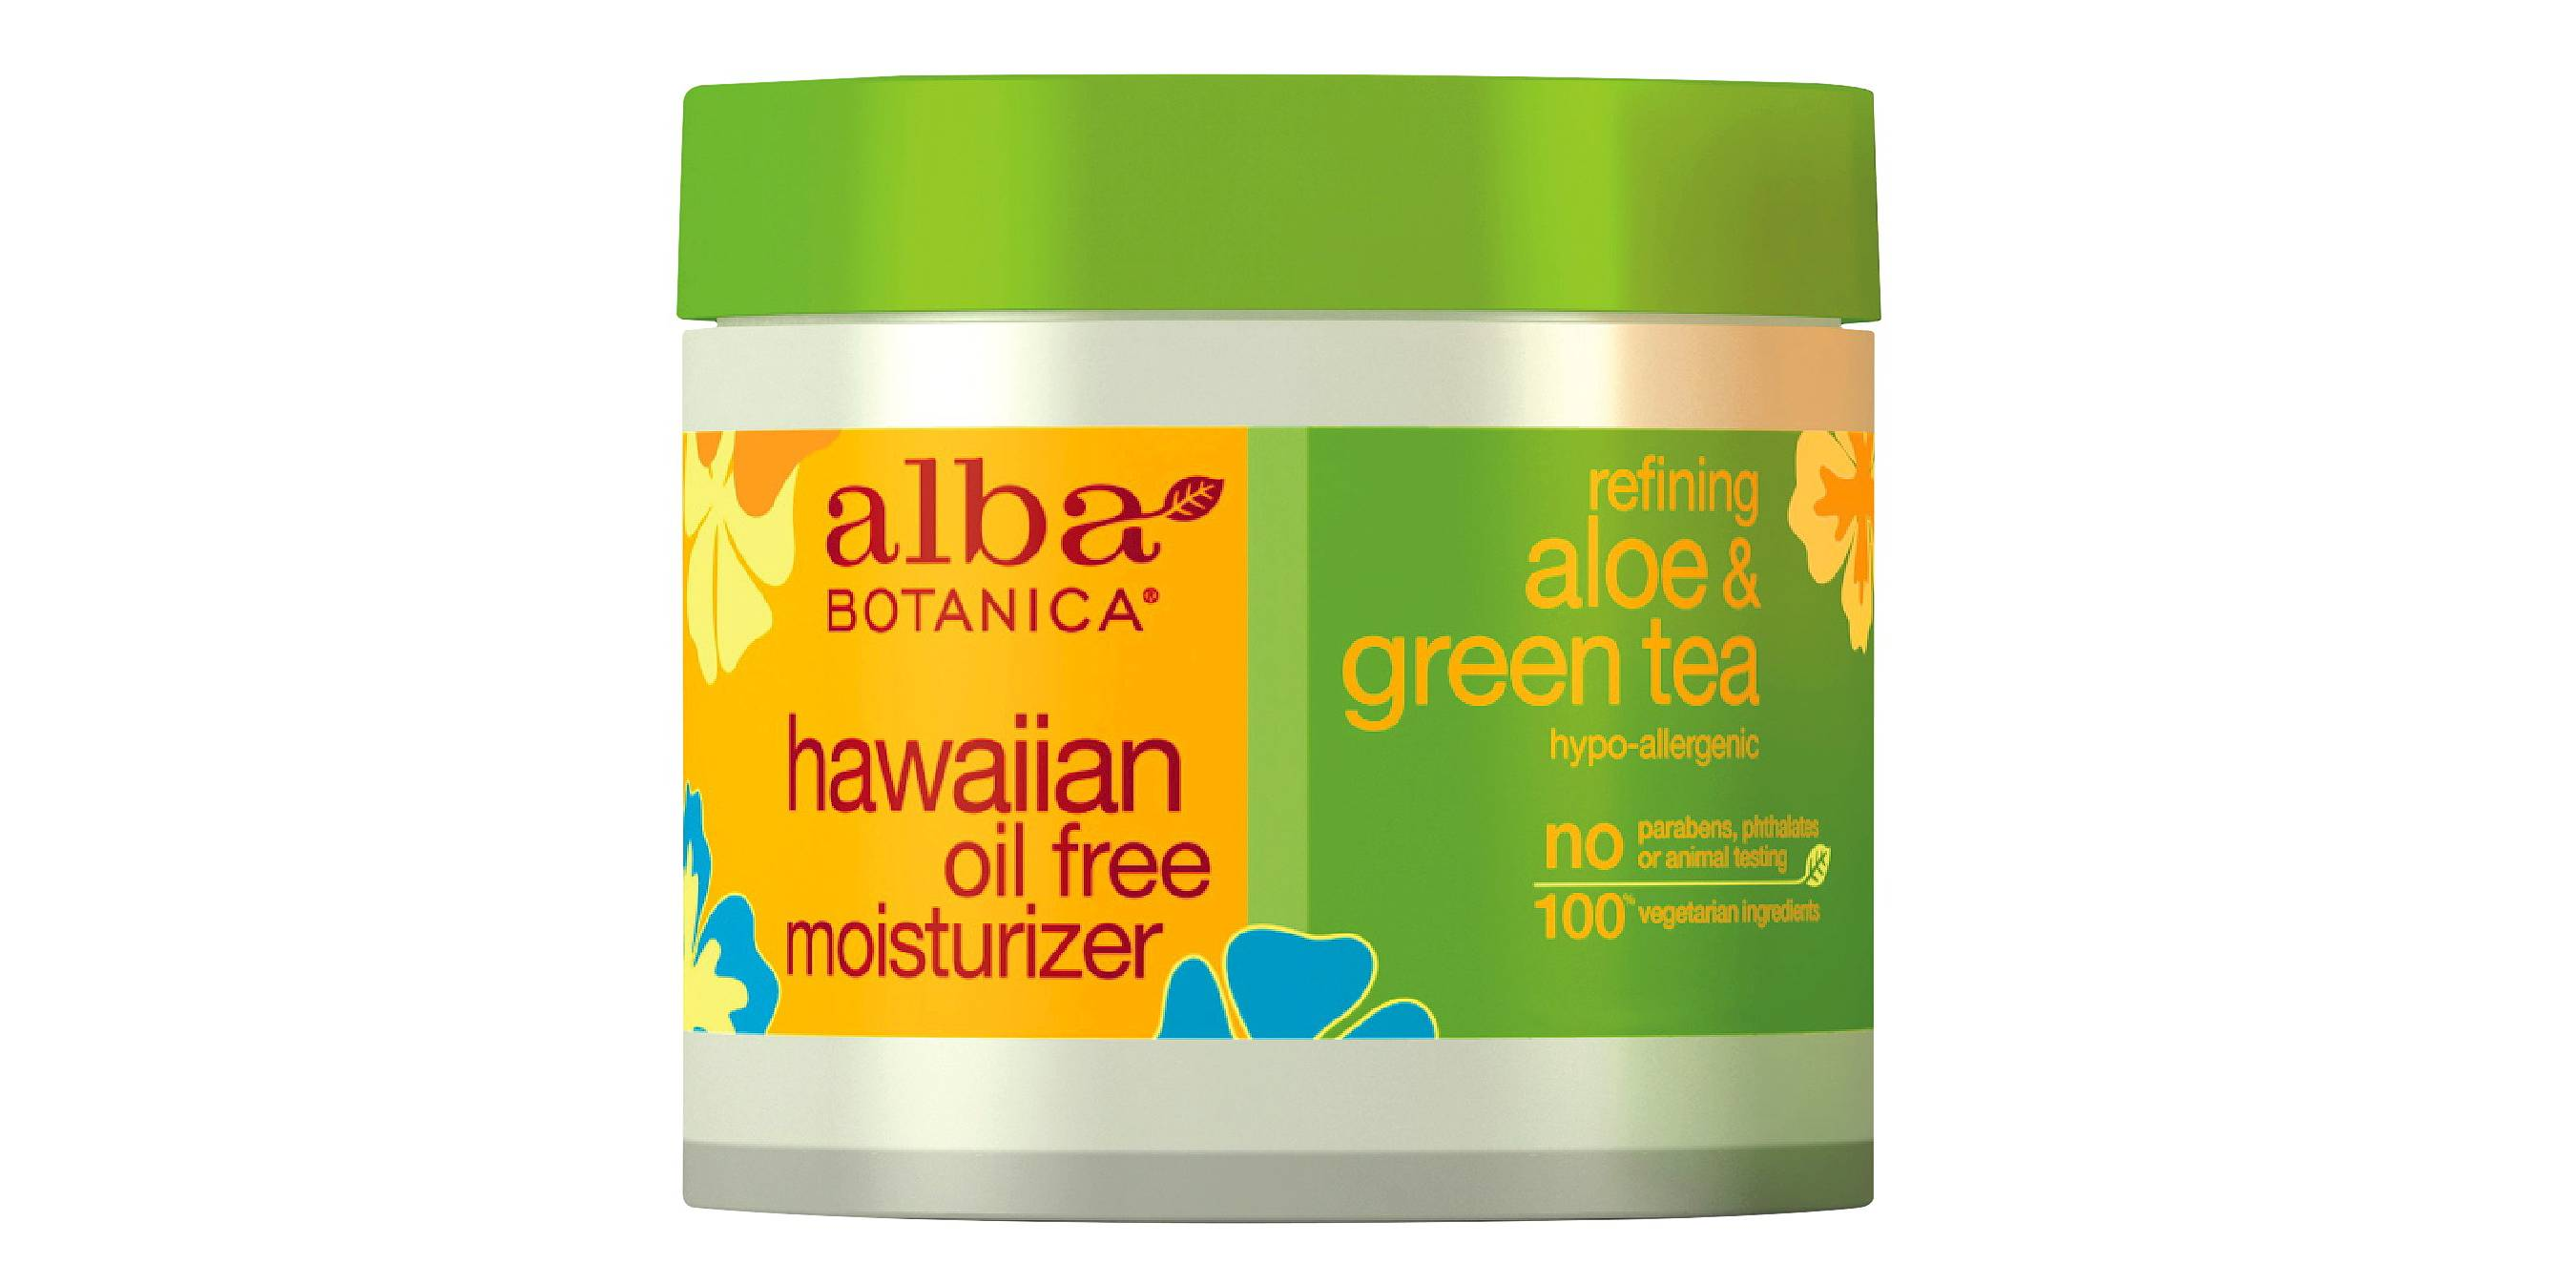 Don’t Miss FREE Alba Botanica Hawaiian Oil Free Moisturizer!